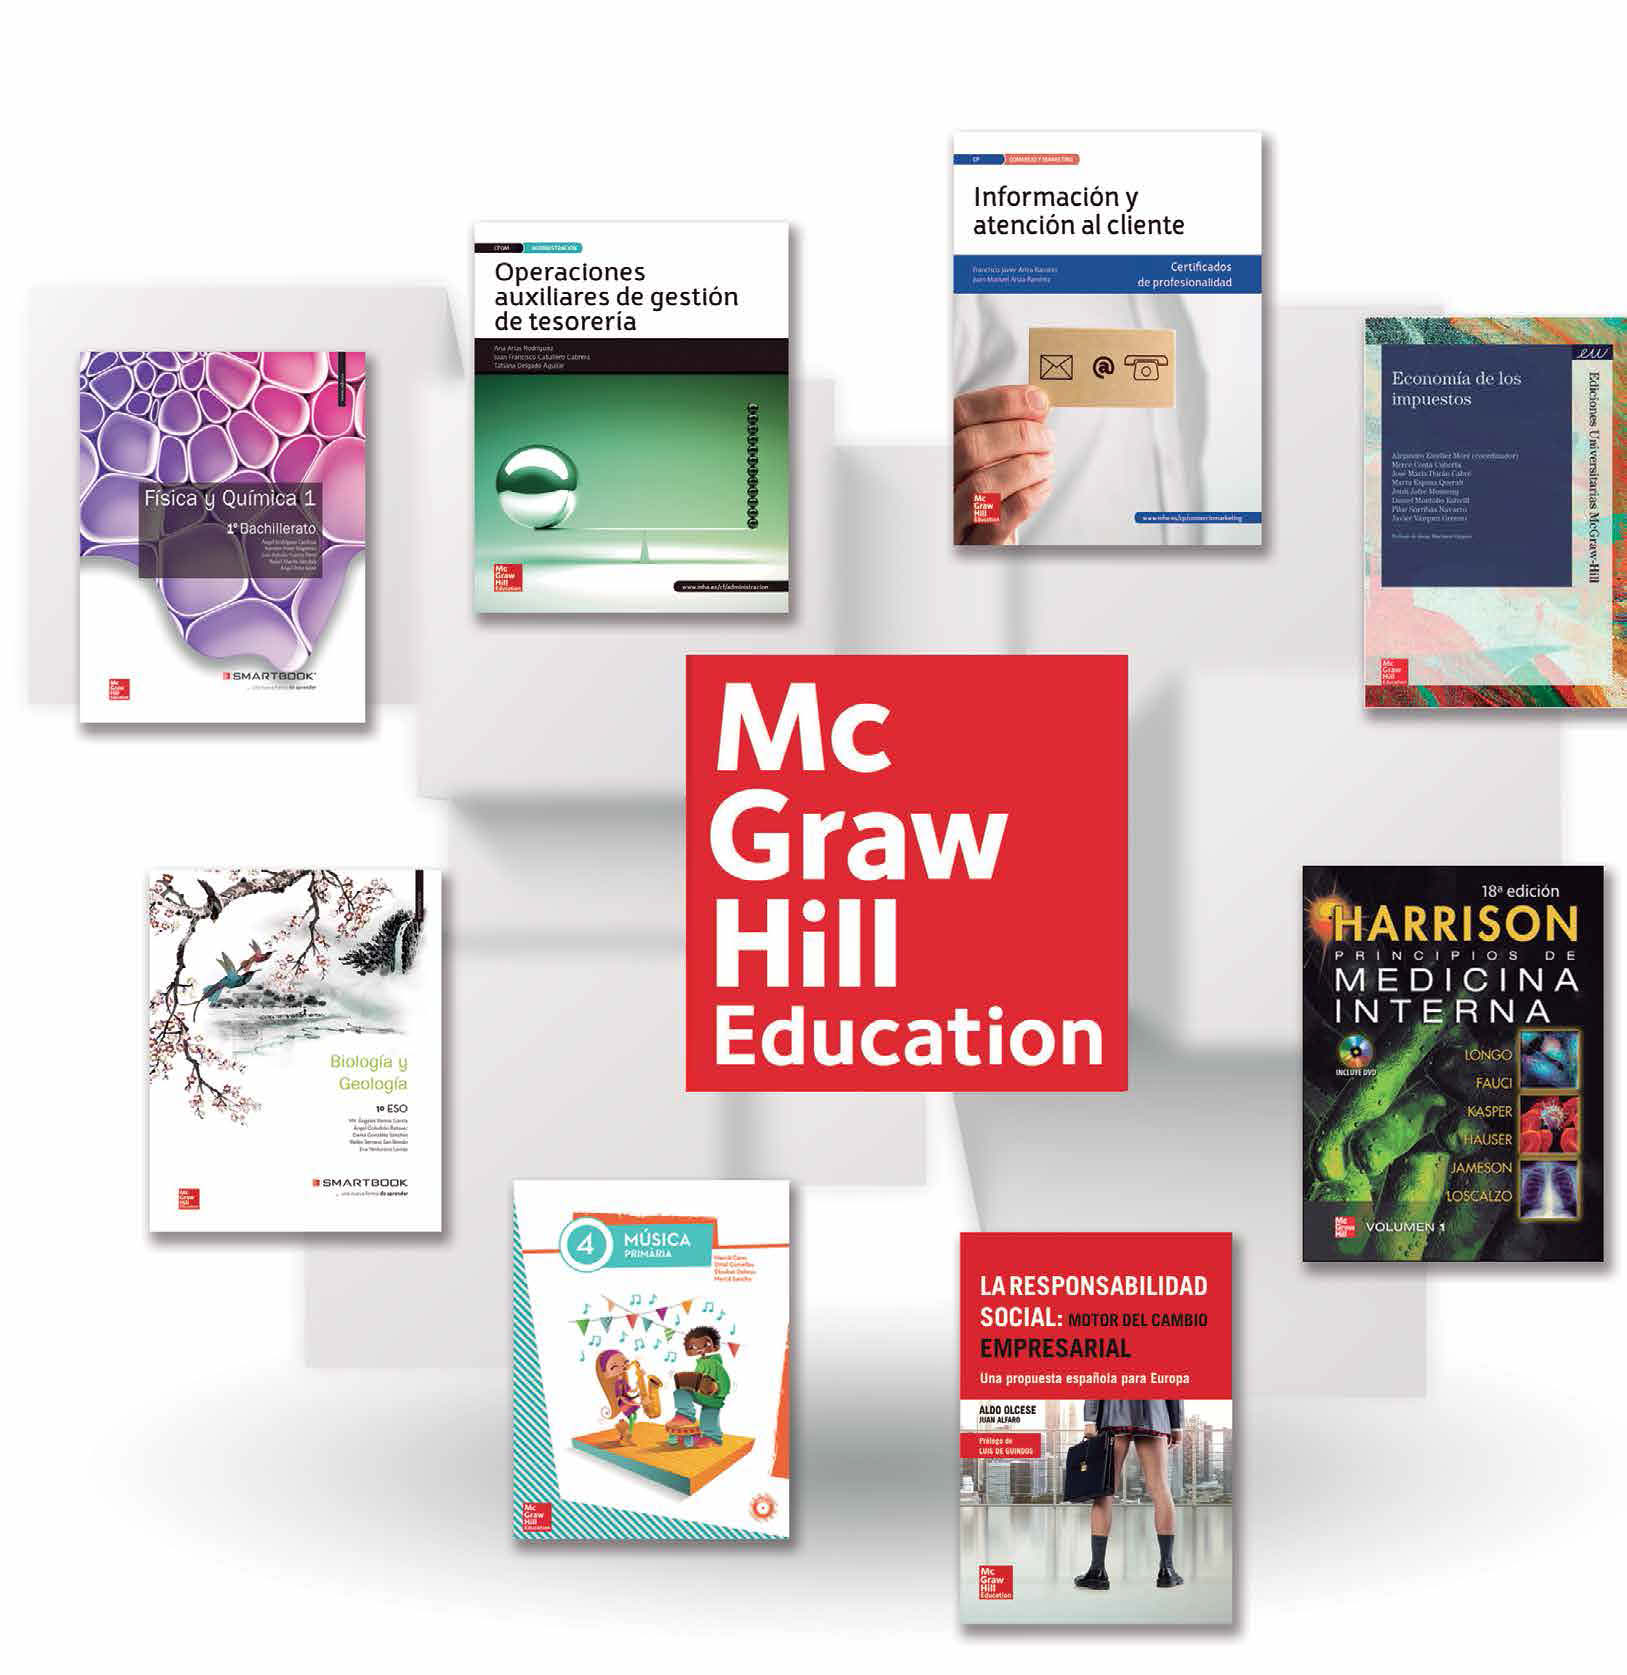 McGraw-Hill Education una editorial global a tu servicio BACHILLERATO SECUNDARIA CICLOS FORMATIVOS PRIMARIA FORMACIÓN PROFESIONAL